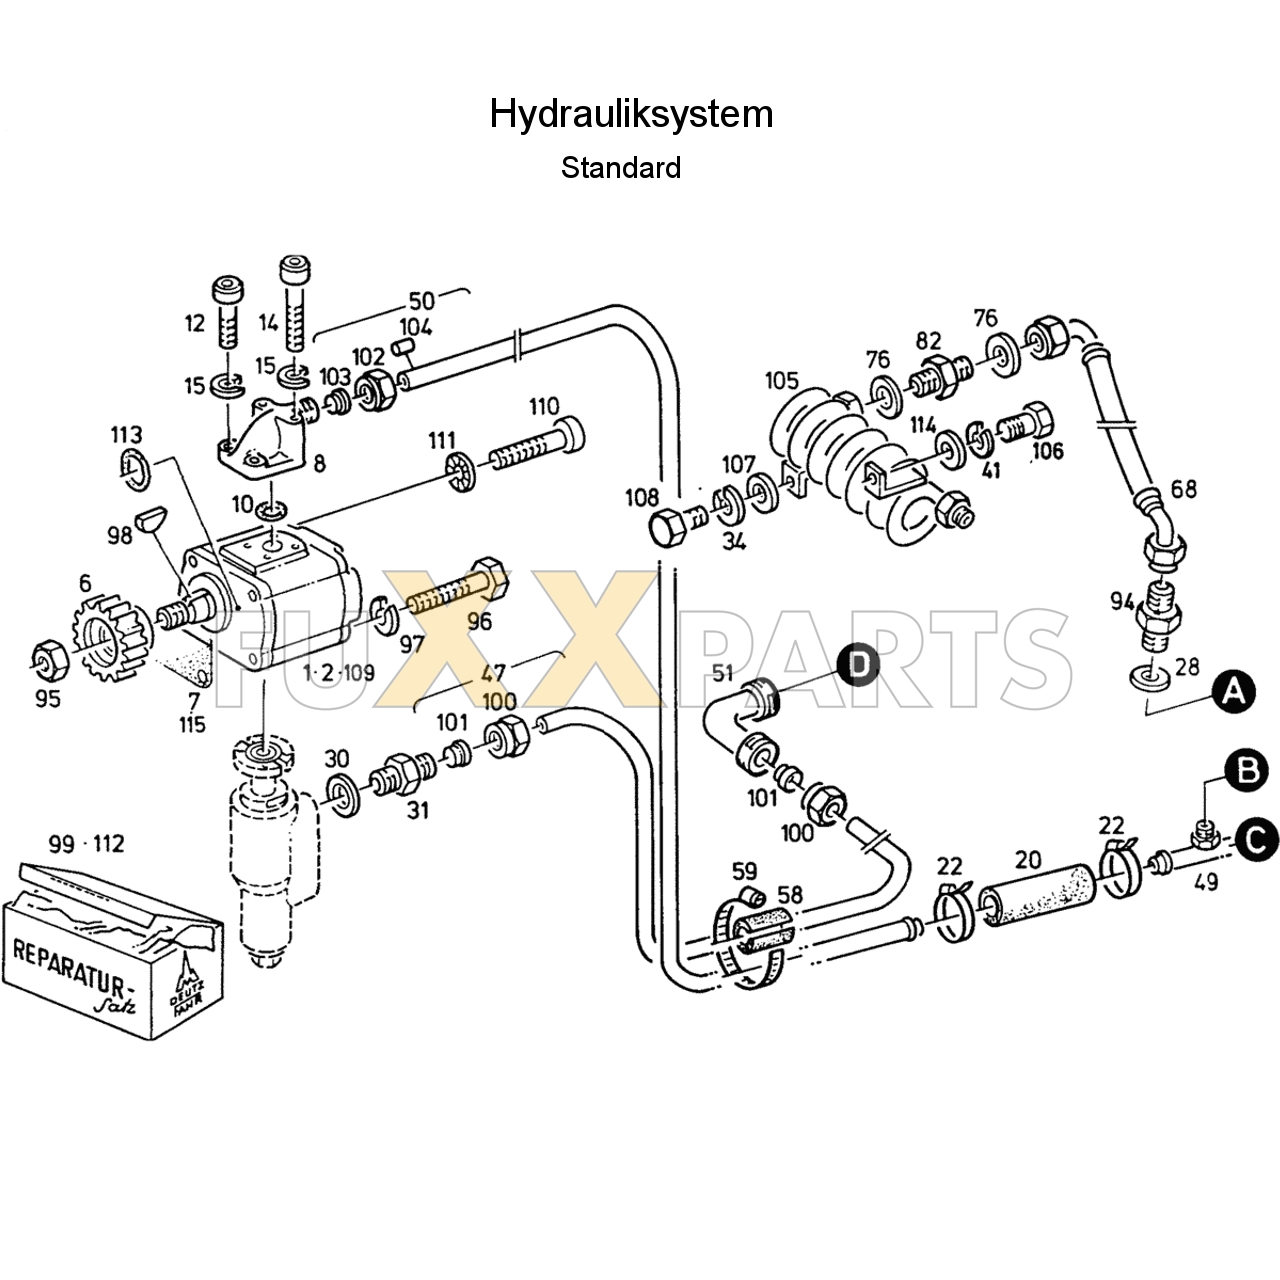 D 6807 C Hydrauliksystem Standard 1